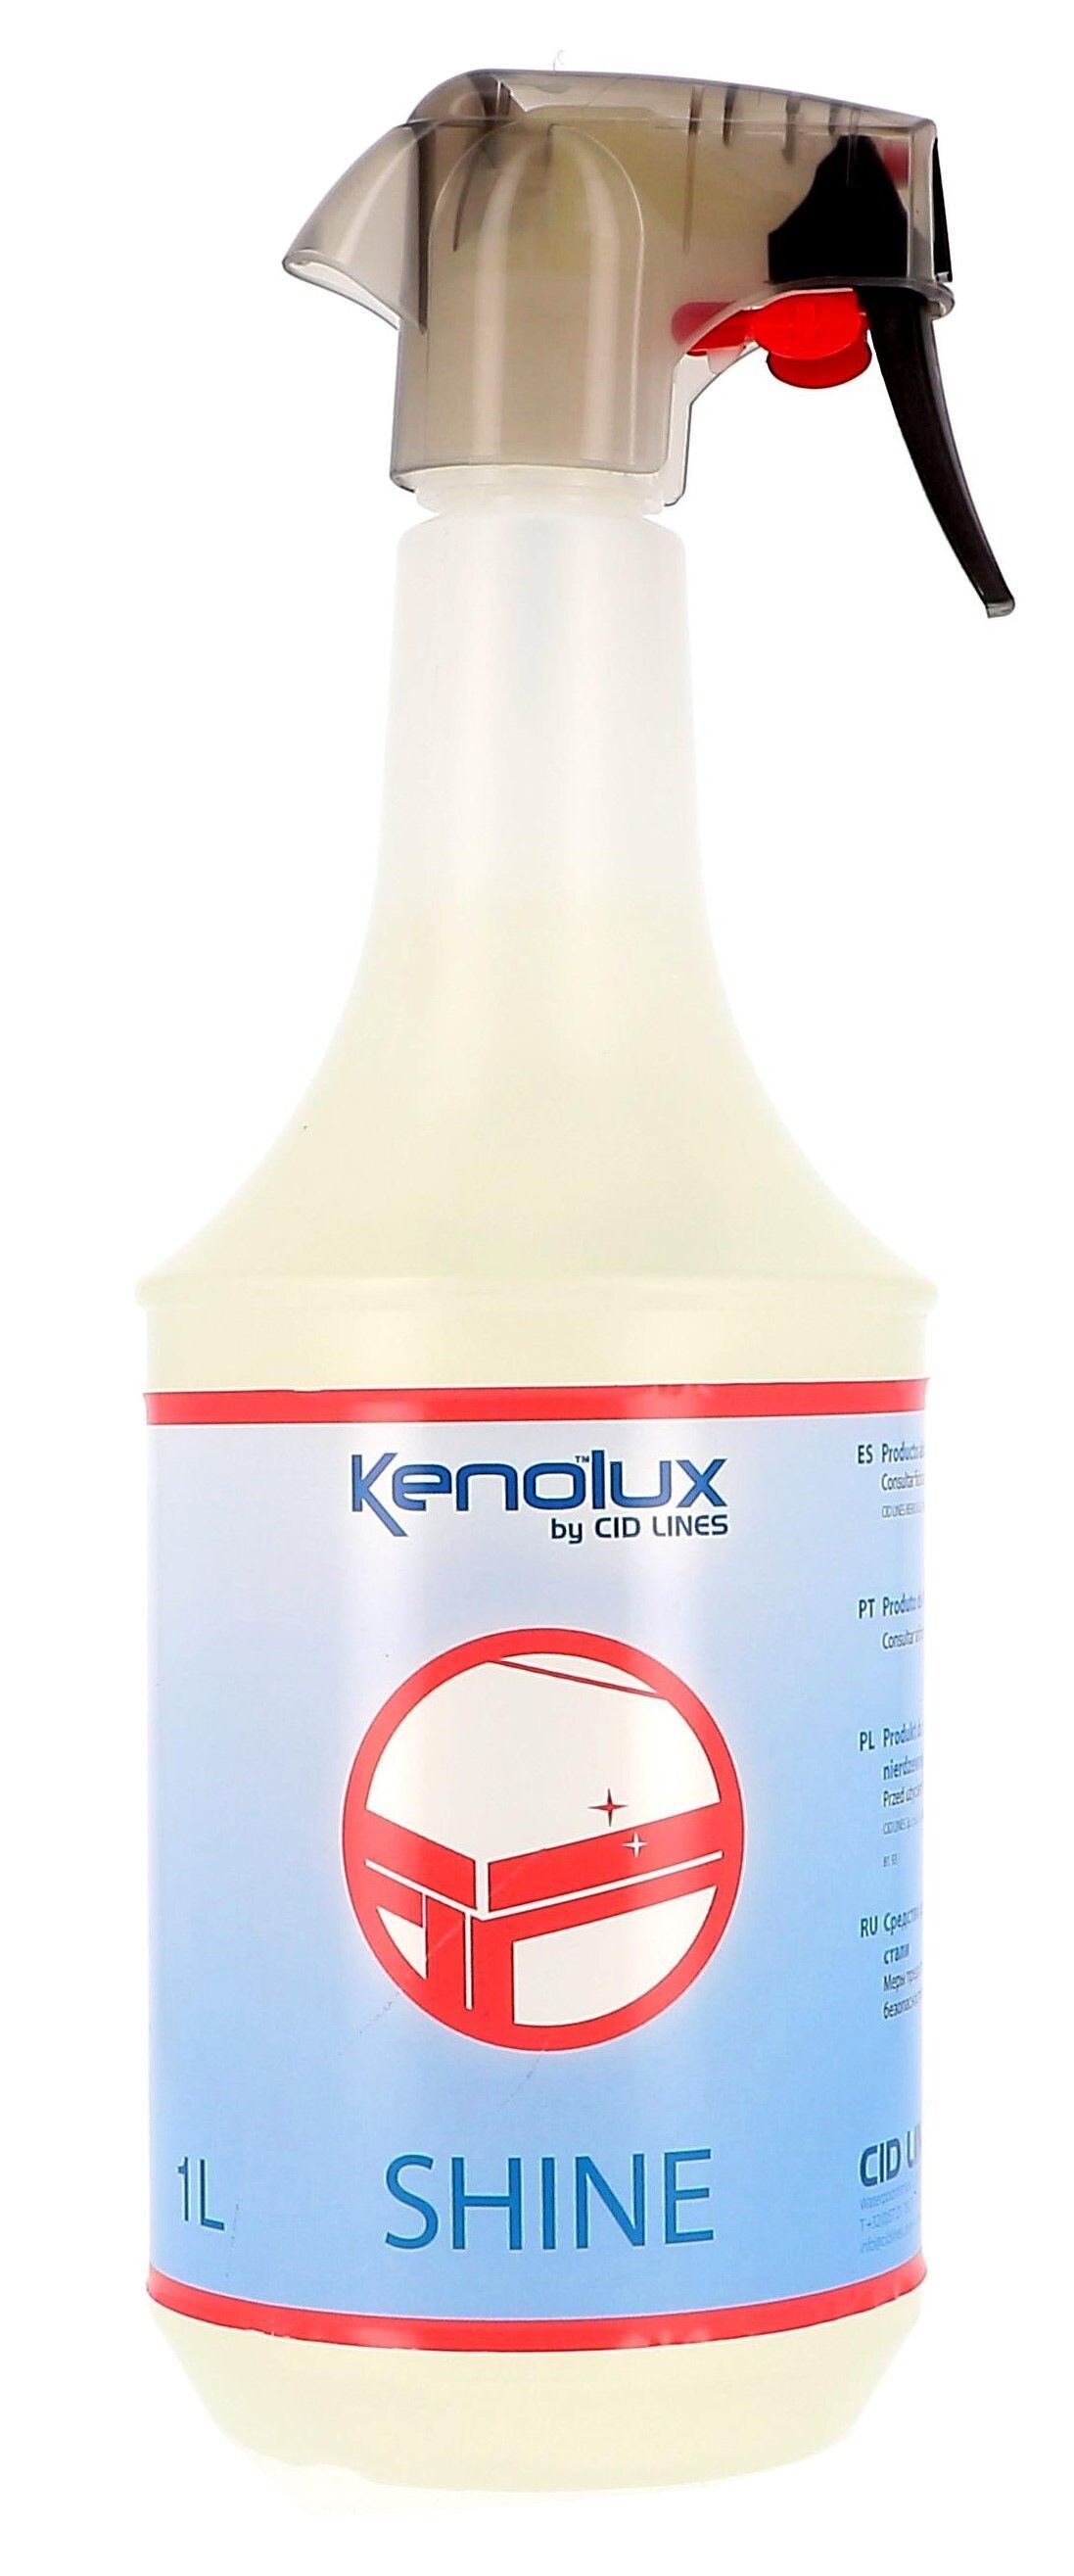 Kenolux Shine Stainless Steel Cleaner 1L Cid Lines (Reinigings-&kuisproducten)